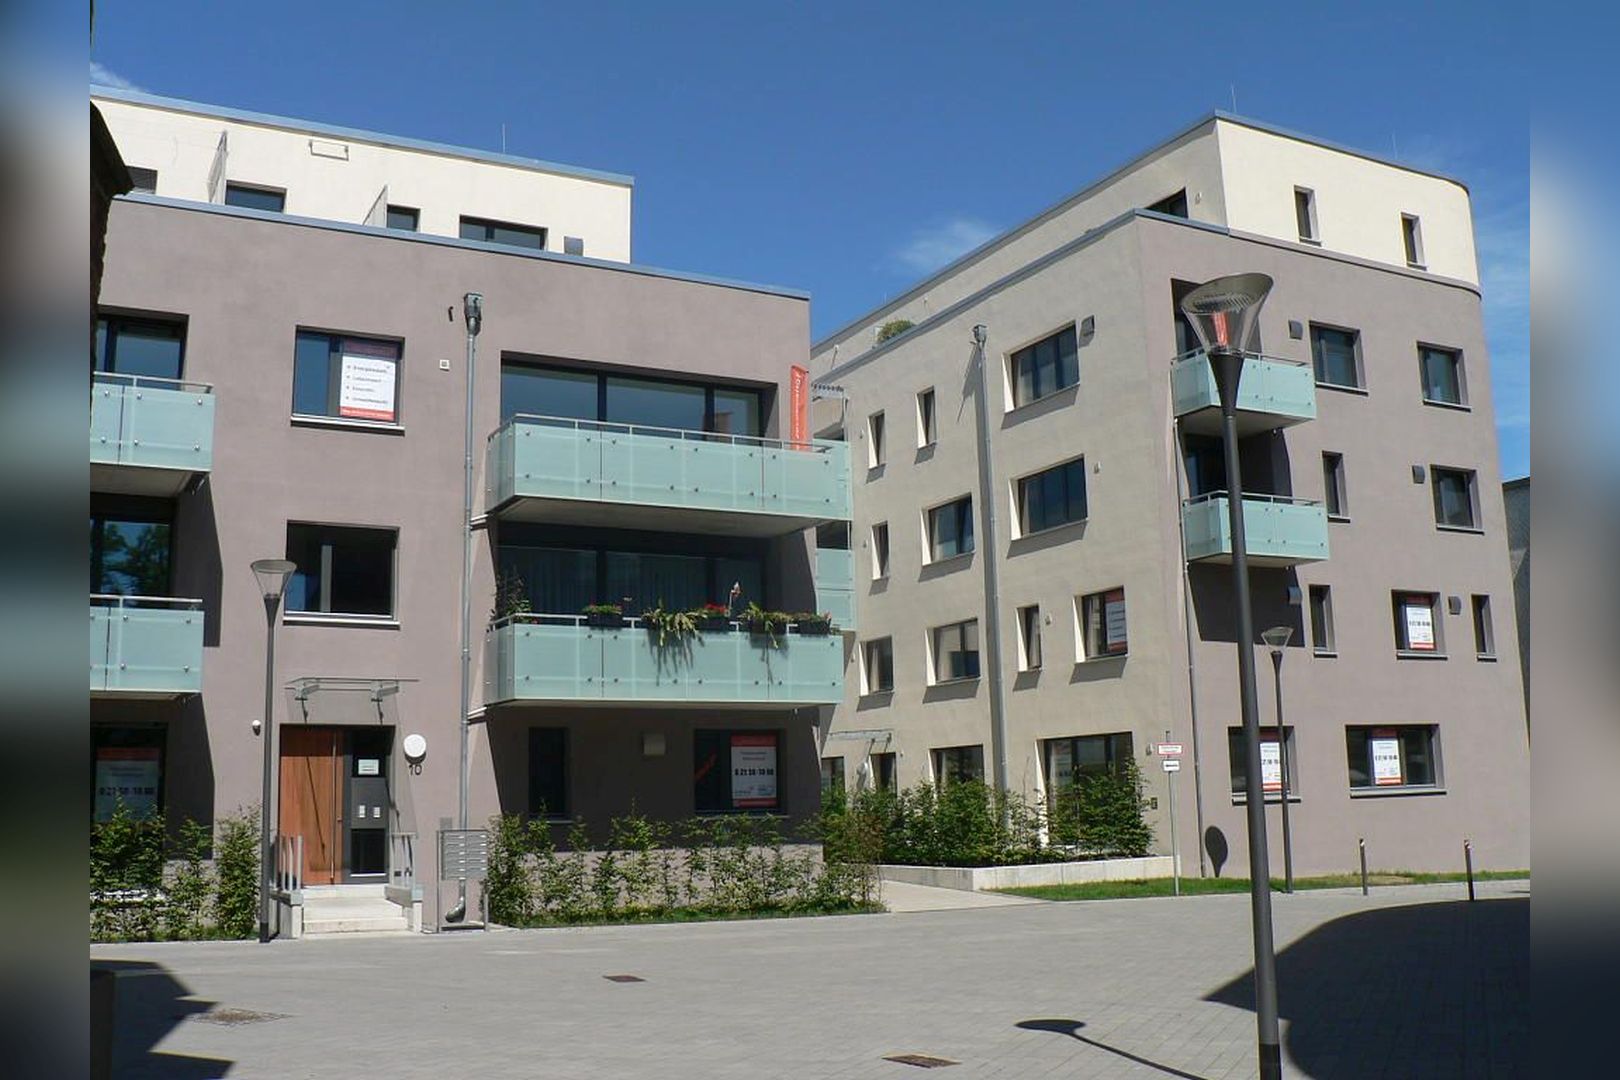 Immobilie Nr.Hilden 54 - 3-Raum-Maisonette-Wohnung mit Balkon und Dachterrasse - Bild 13.jpg